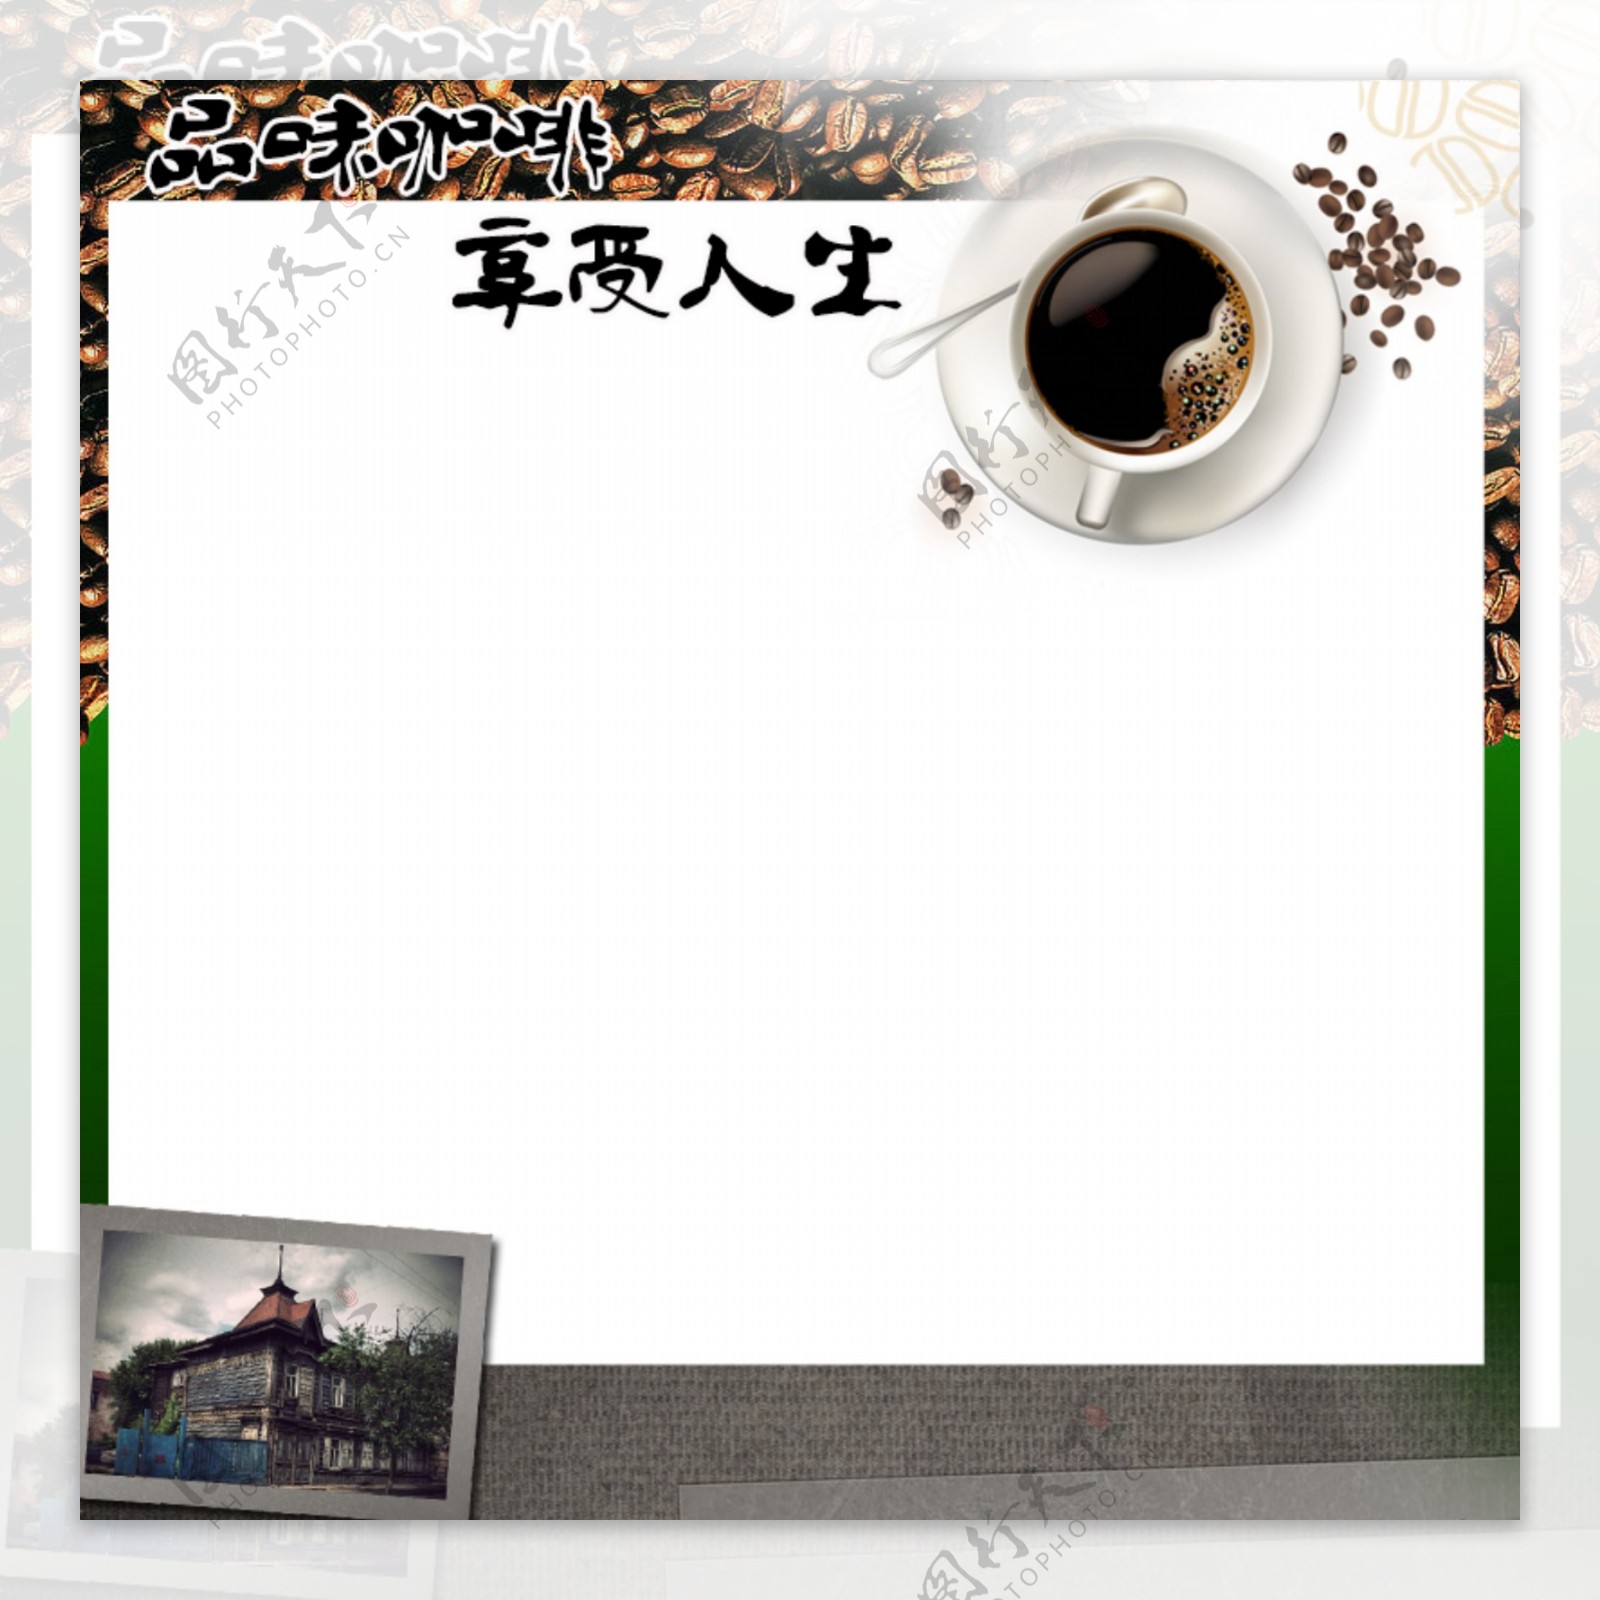 咖啡网页图片